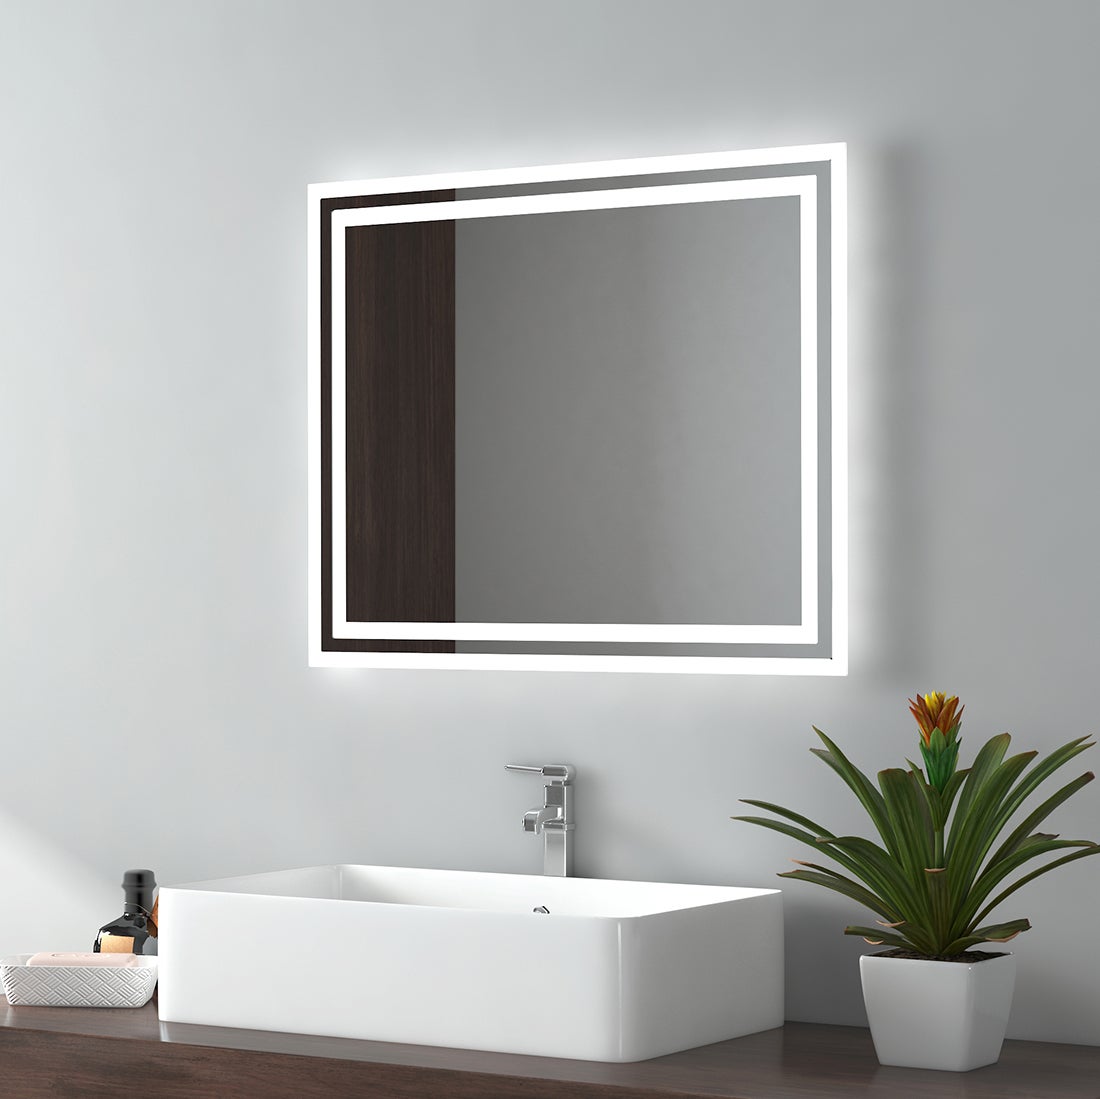 EMKE Badspiegel LED IP44 Wasserdicht Wandspiegel, 60x50cm, Kaltweißes/Warmweißes Licht, Knopfschalter, Beschlagfrei